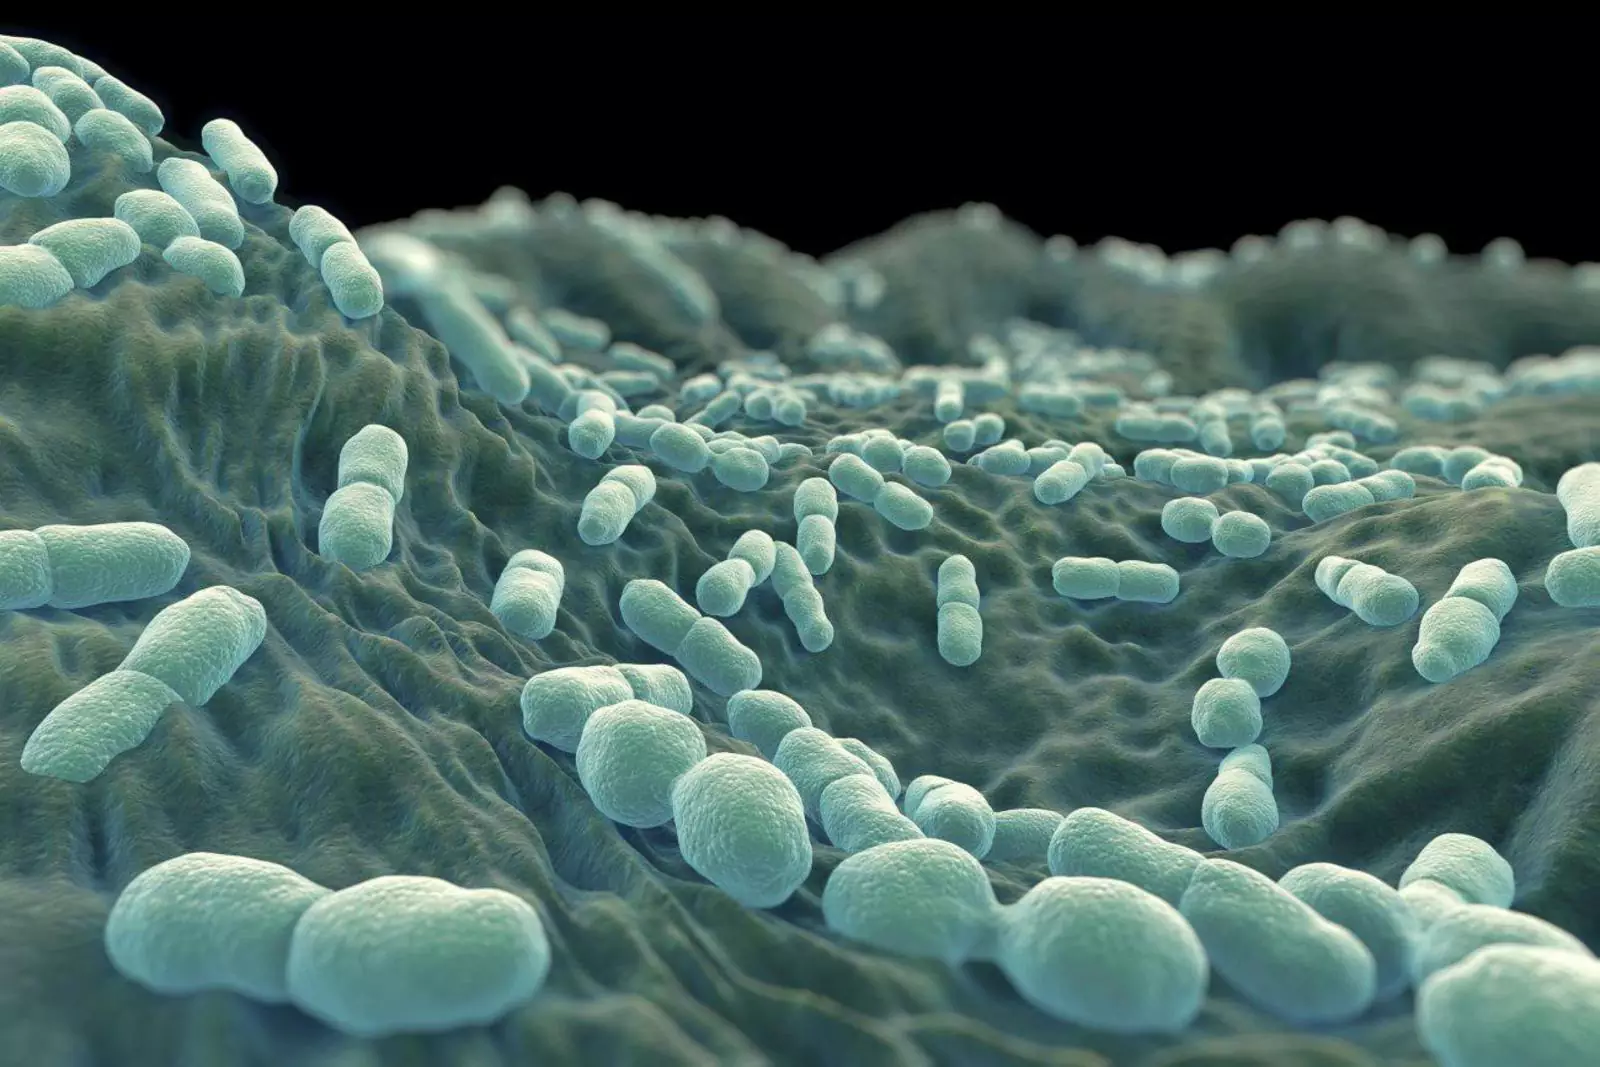 Внутри мочевых катетеров обычно прекрасно размножаются бактерии.